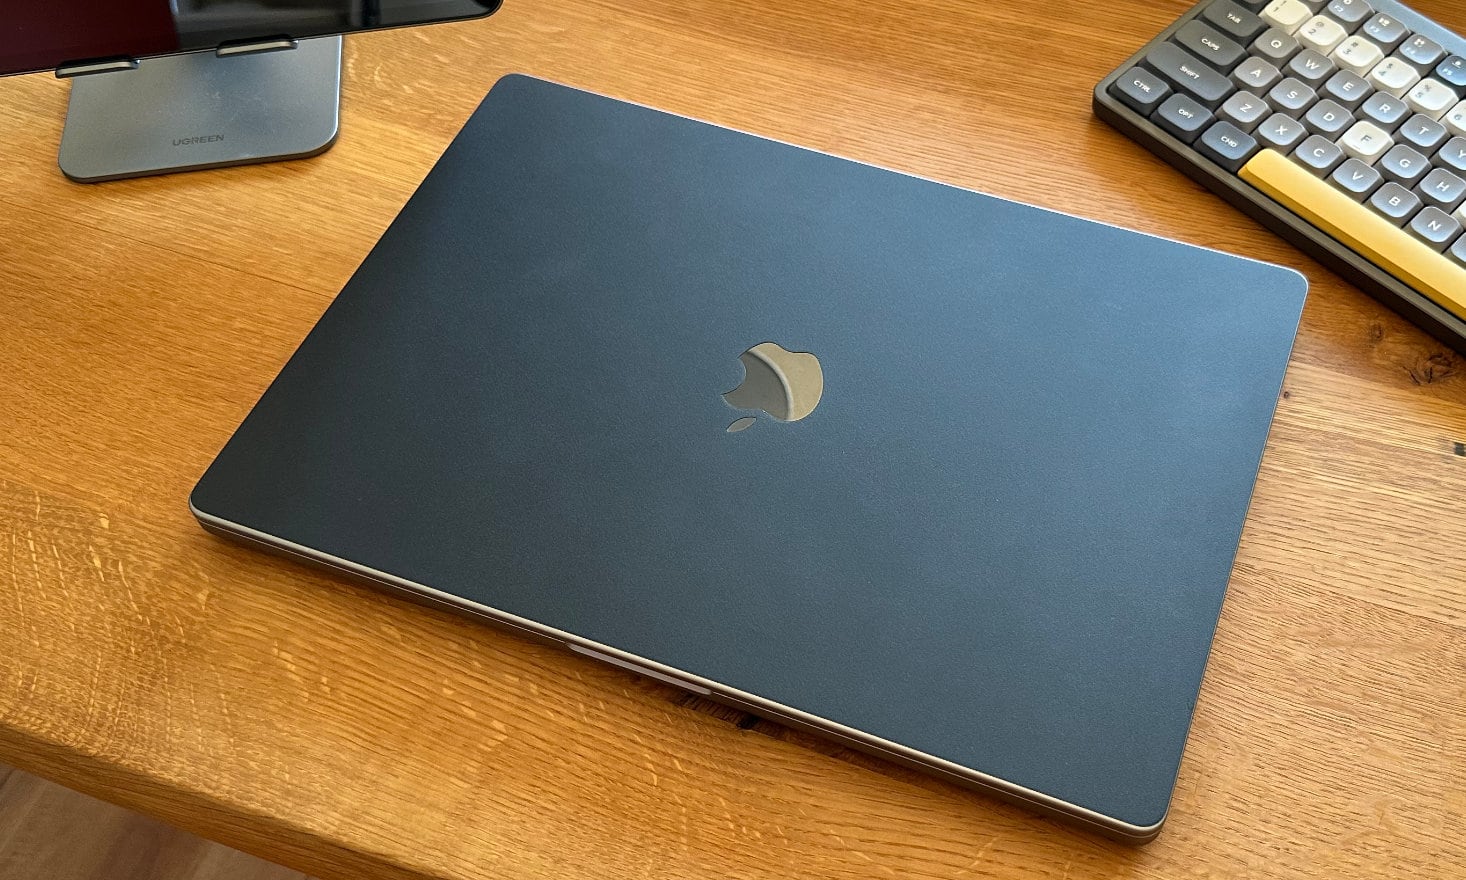 閉じた状態のMacBook Pro 16インチがdbrandのマットブラックのスキンが貼られた状態で木目の見えるテーブルに置いてある。右上にはNuPhy Air75のカラフルなキーボードが見切れている